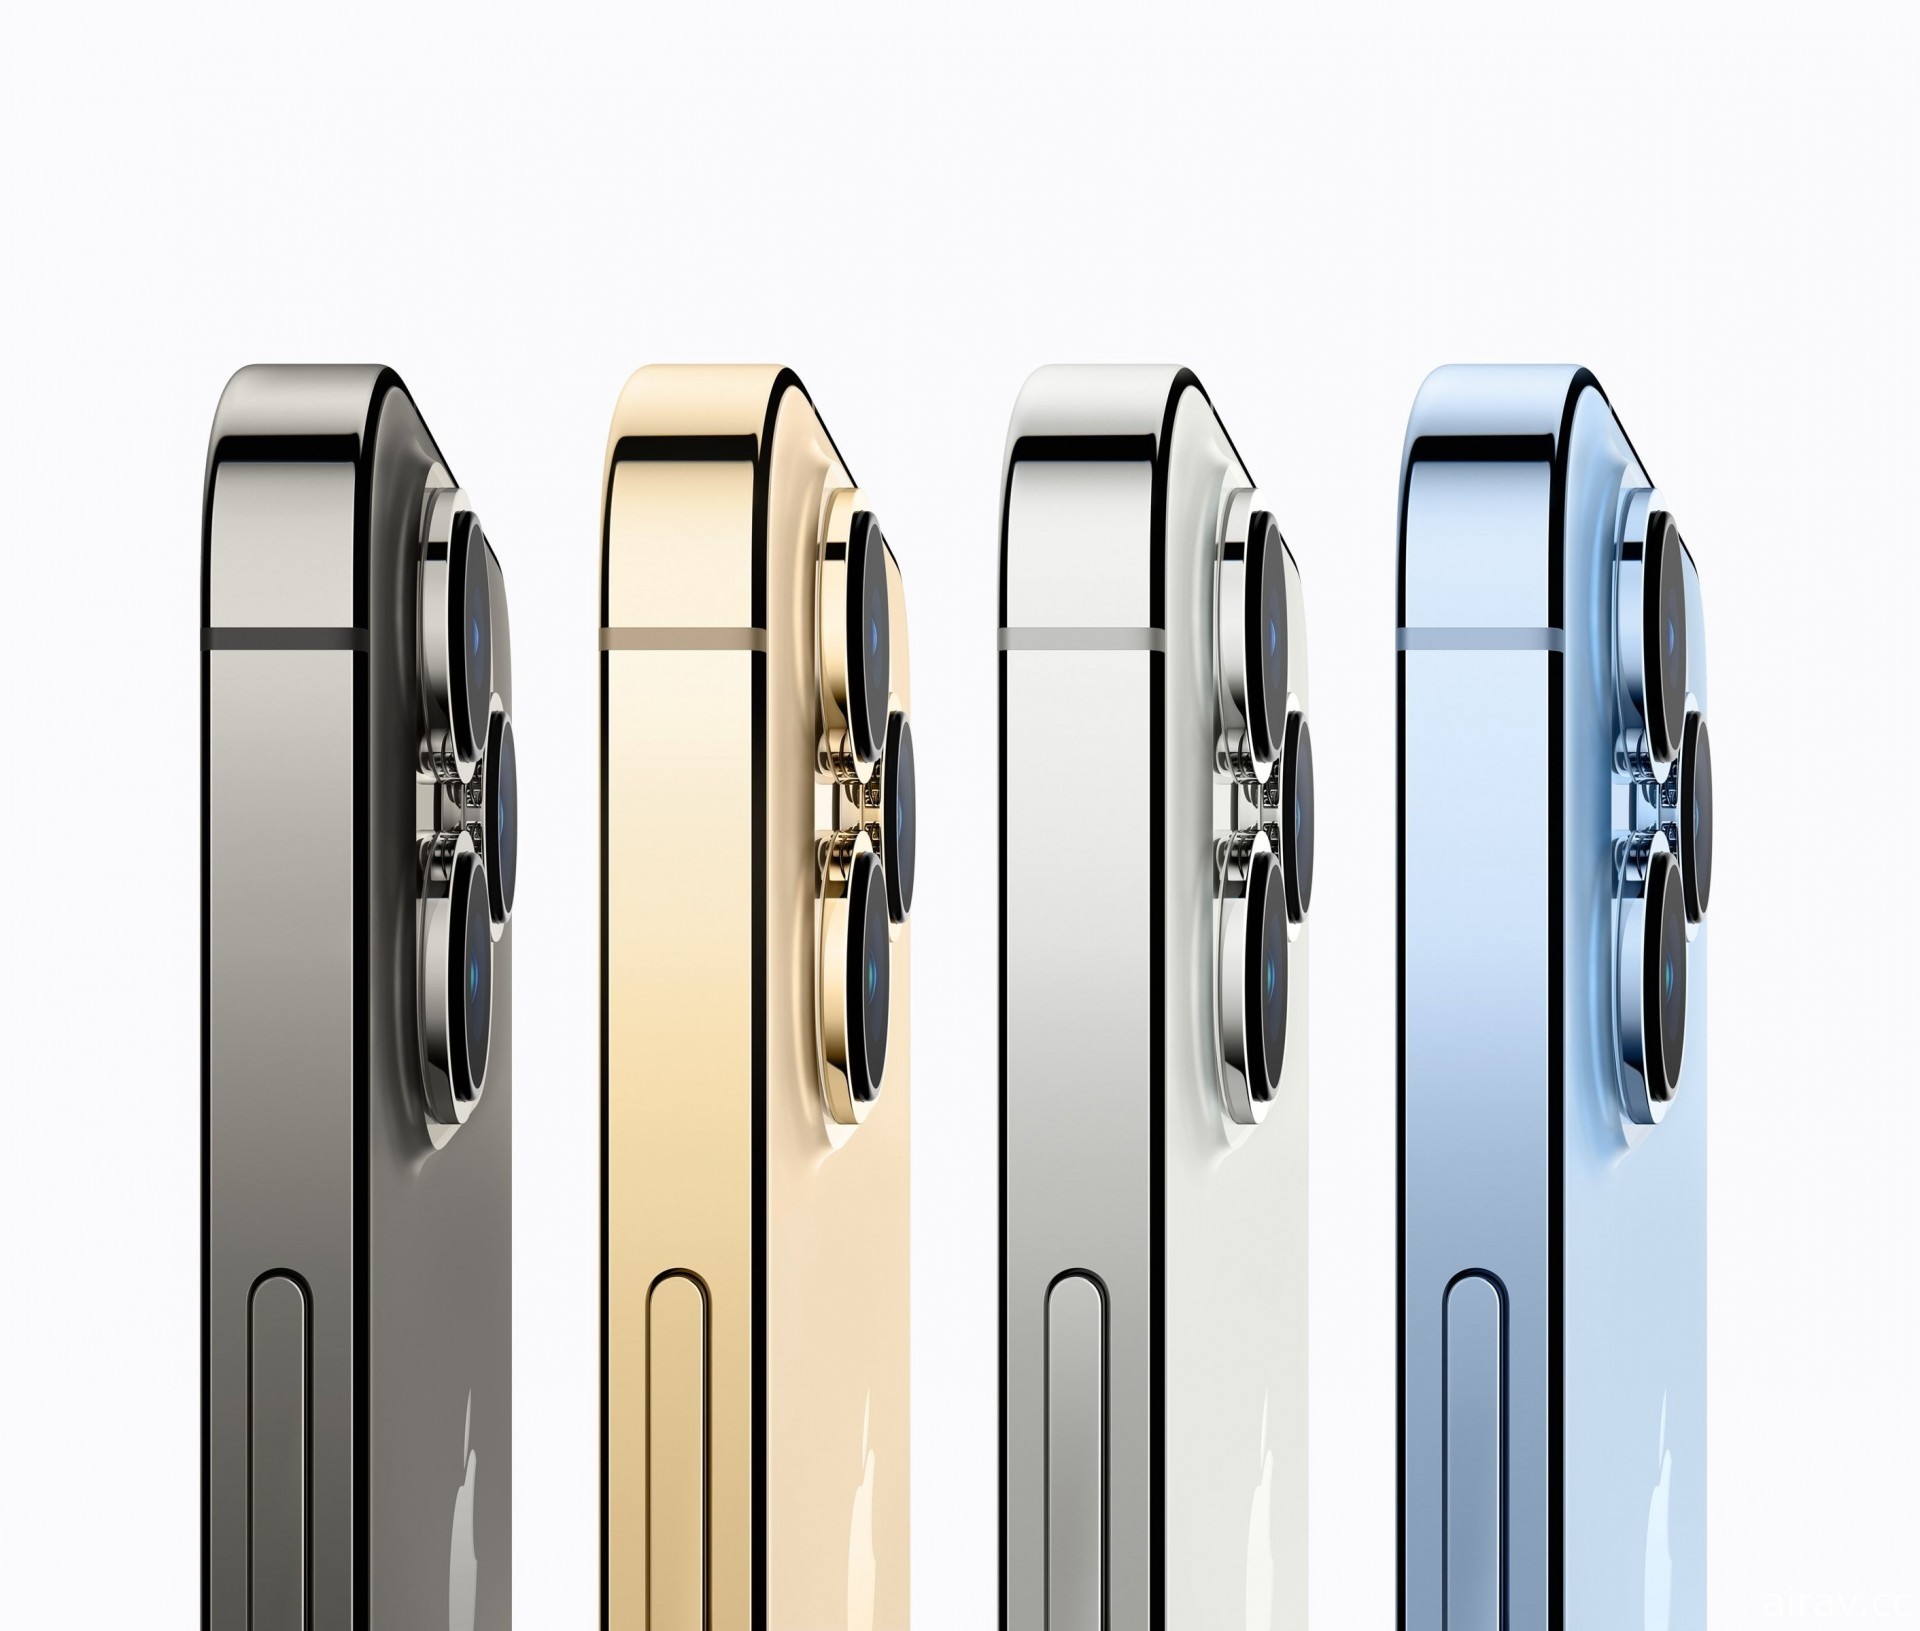 【速报】Apple 公布 iPhone 13 系列售价等情报 iPhone 13 Pro Max 售价 36,900 元起